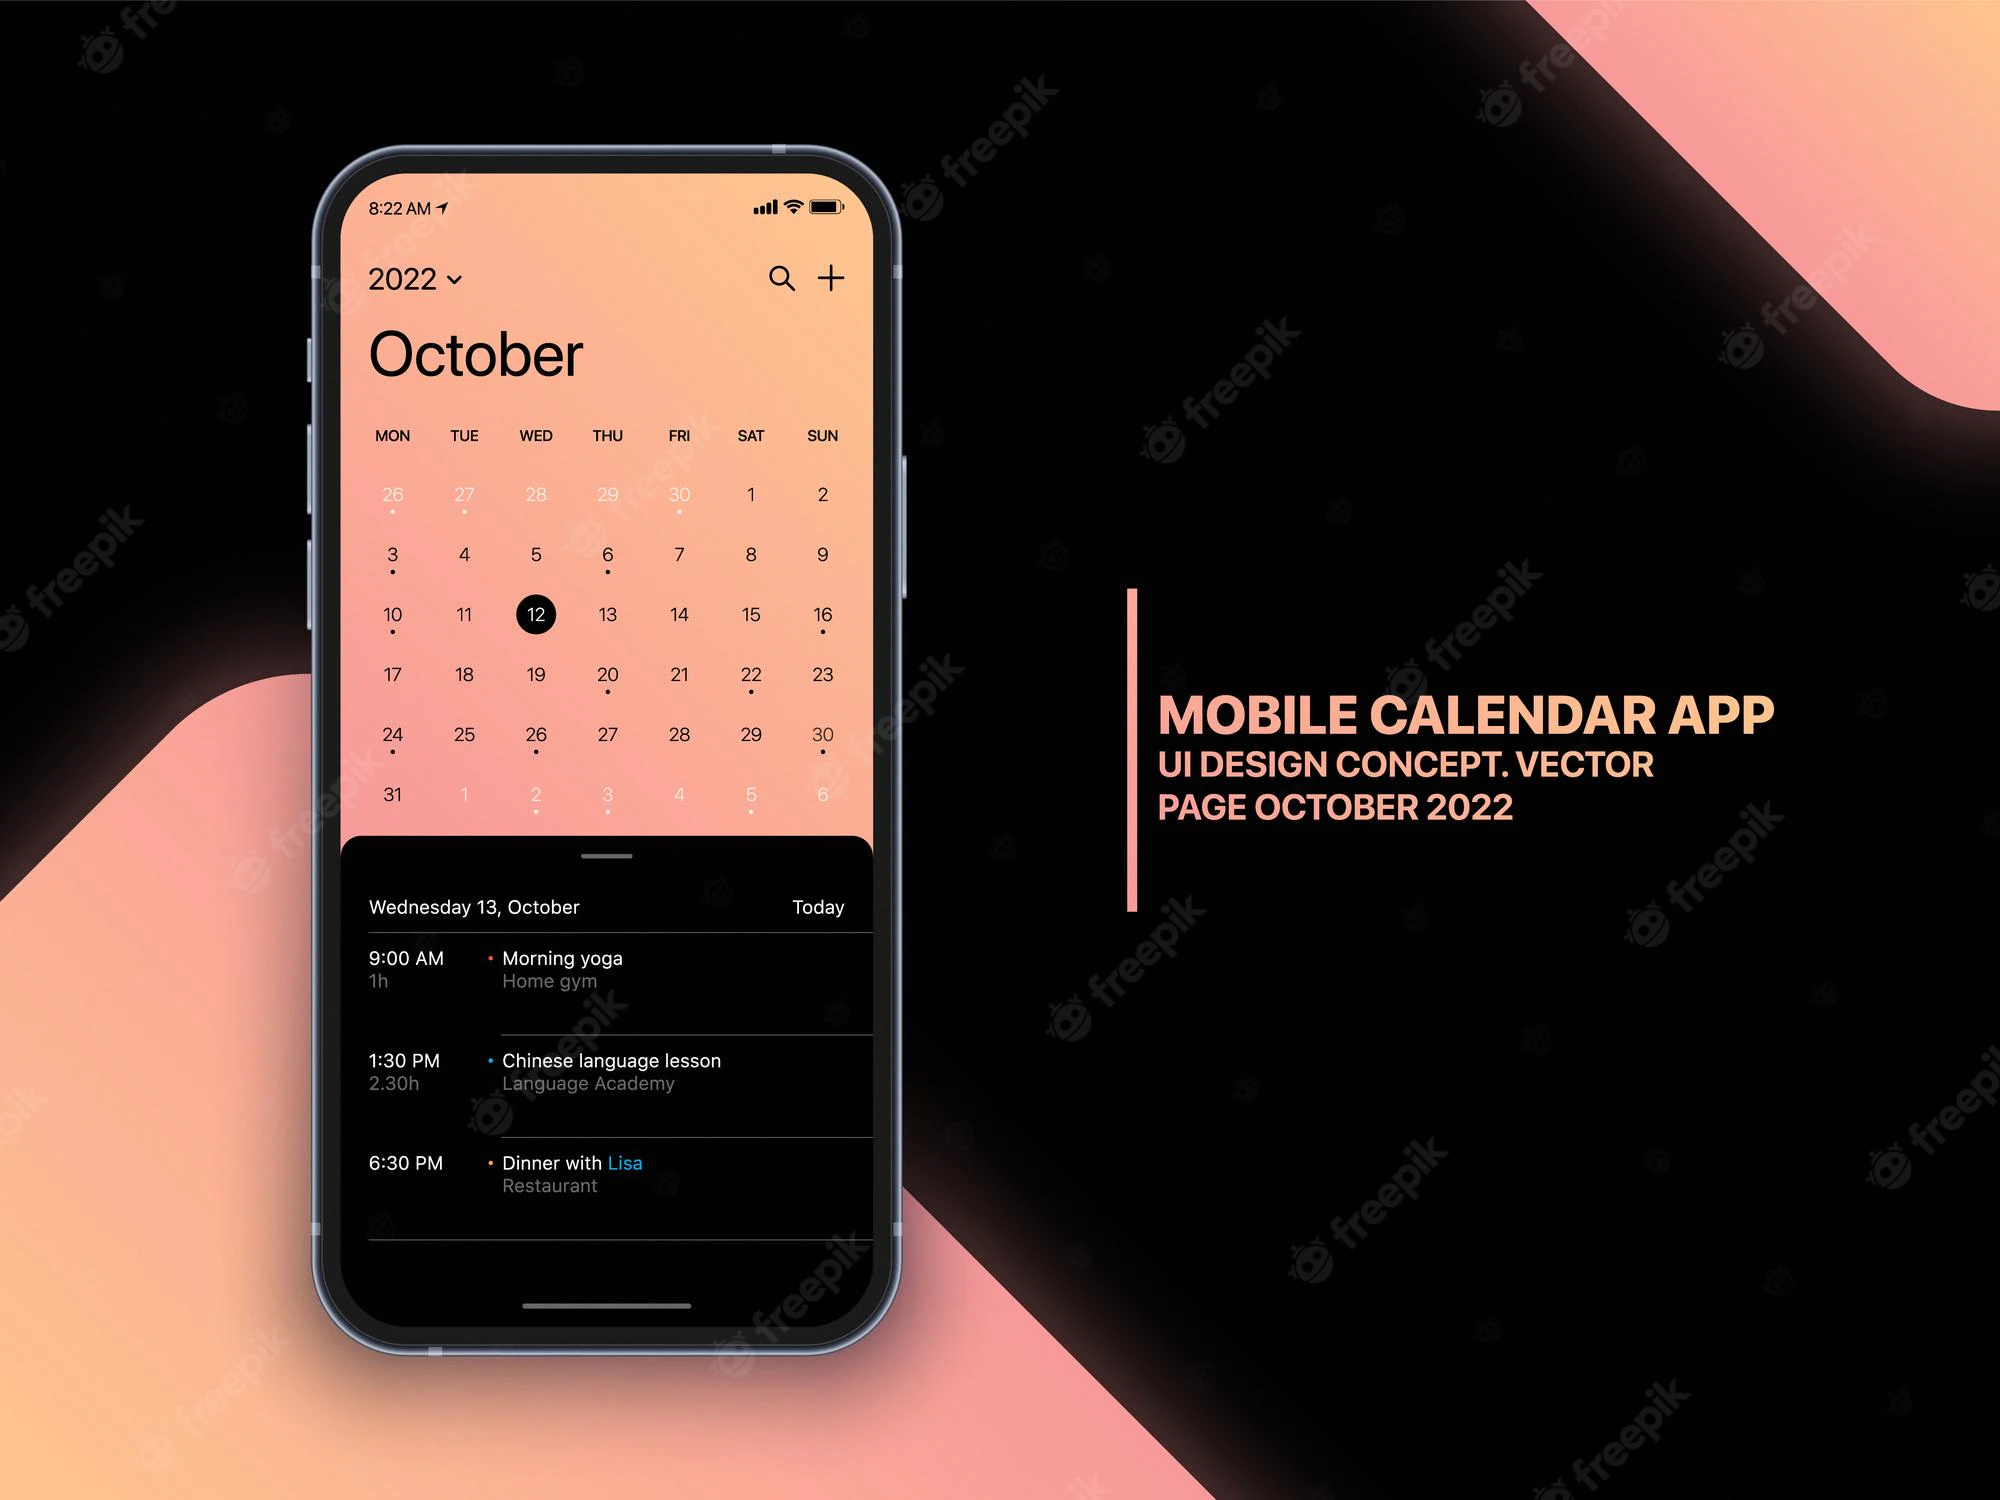 calendrier-mobile-app-concept-octobre-2022-page-liste-taches-taches-ui-ux-design-vecteur-maquette-ecran-iphone-realiste-isolee-fond-modele-application-smartphone-business-planner_87538-2516